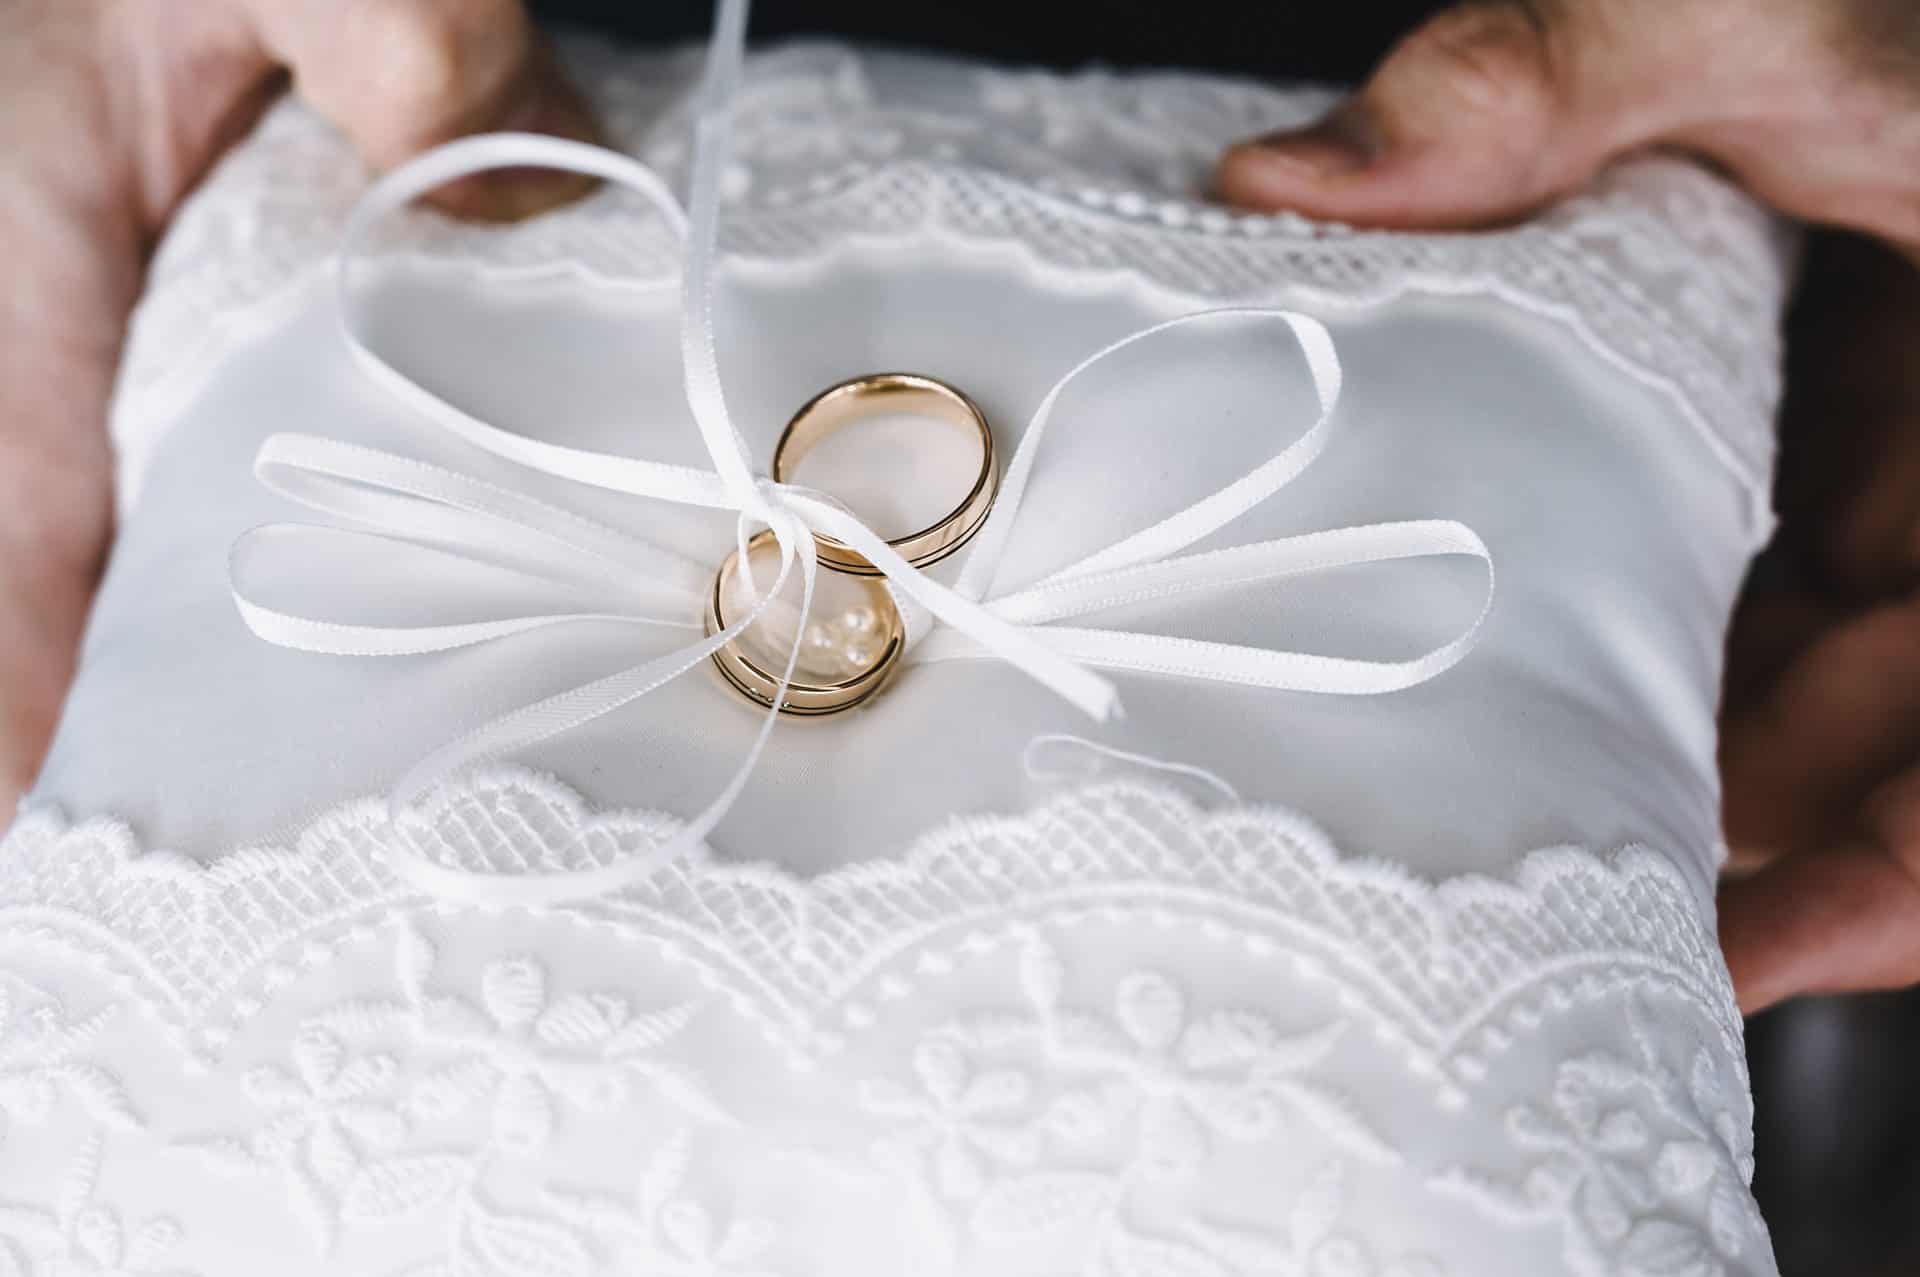 Eine Person hält einen Ehering auf einem weißen Kissen.